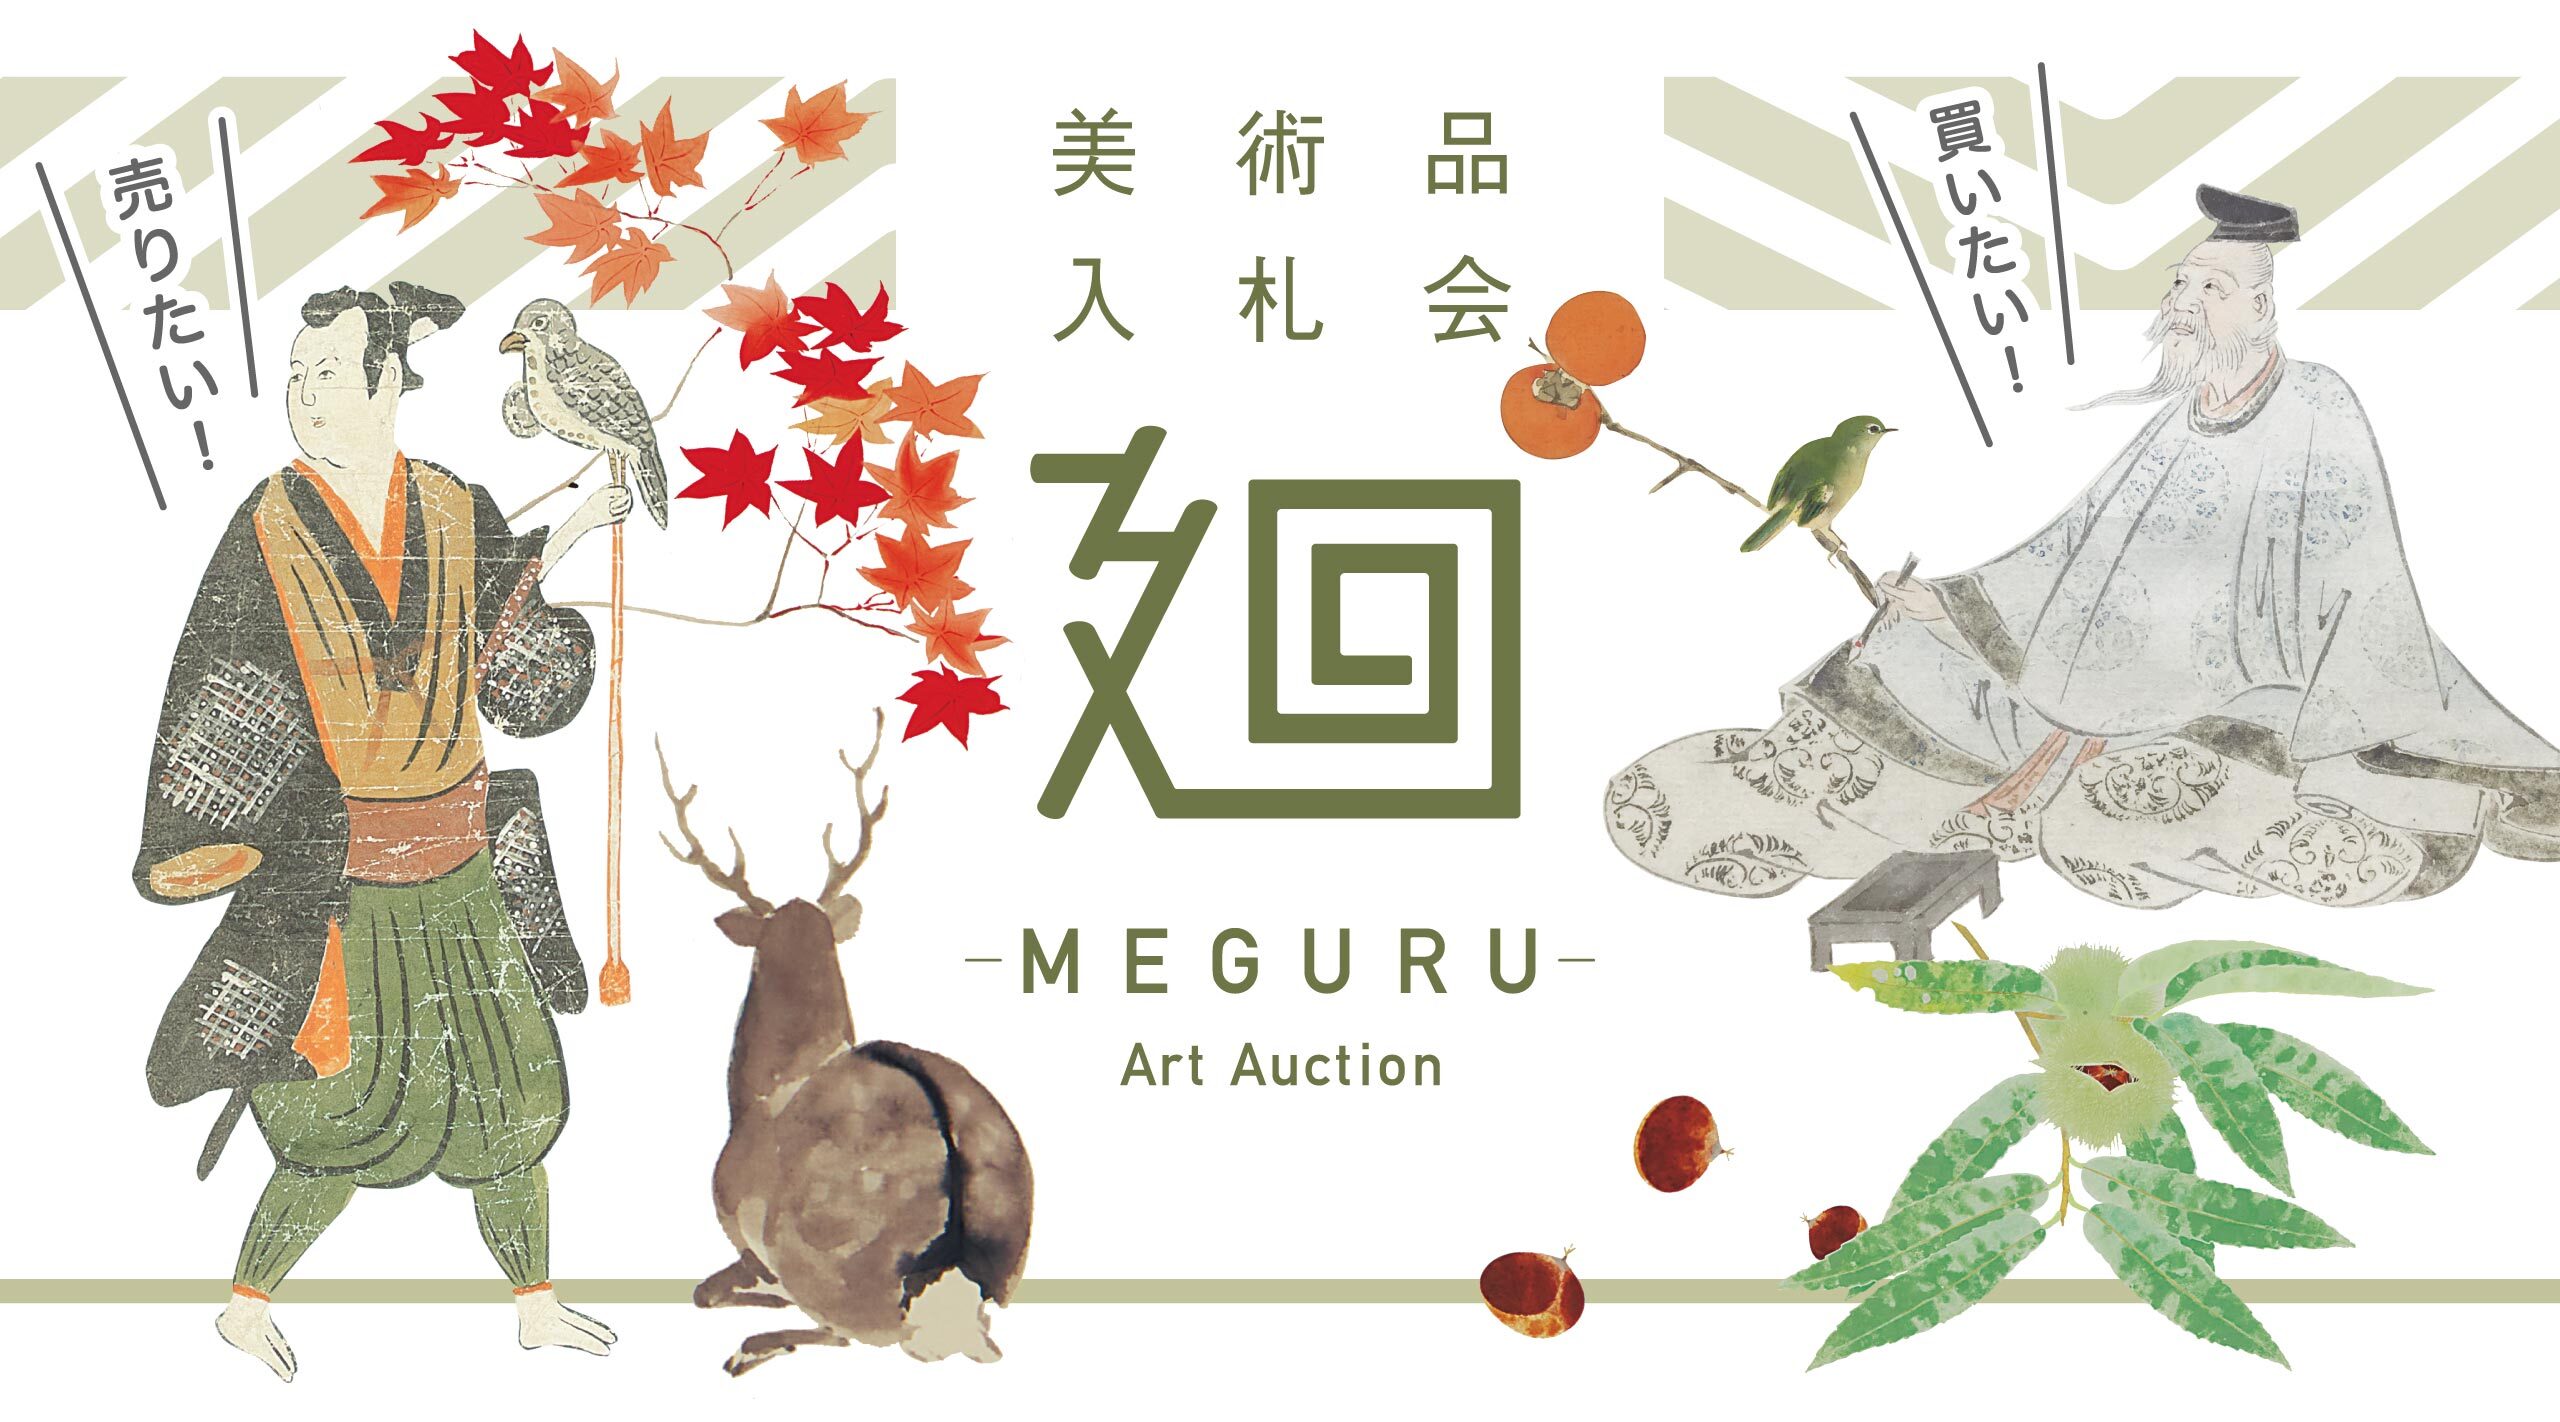 誰でも気軽にアートオークションデビュー 美術品入札会 廻 Meguru Vol 5を開催 株式会社 加島美術のプレスリリース